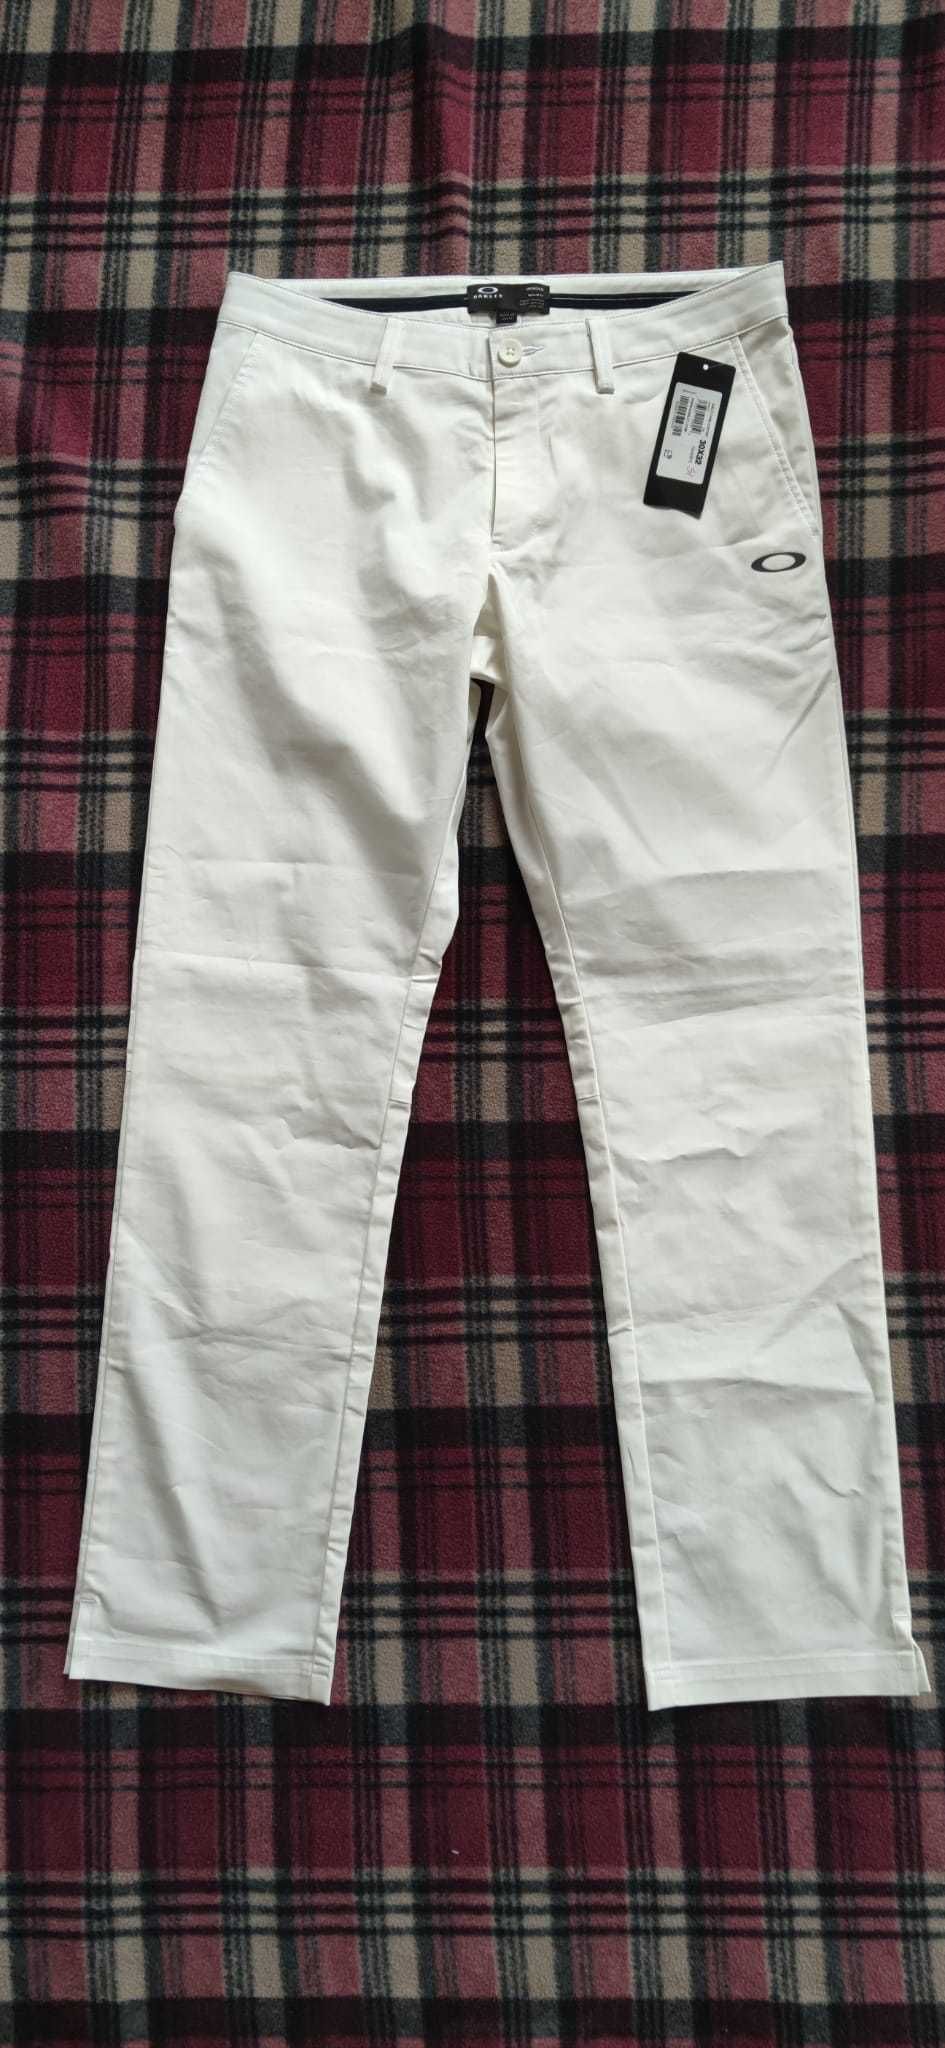 Sprzedam nowe spodnie męskie białe chinosy OAKLEY r. 30x32